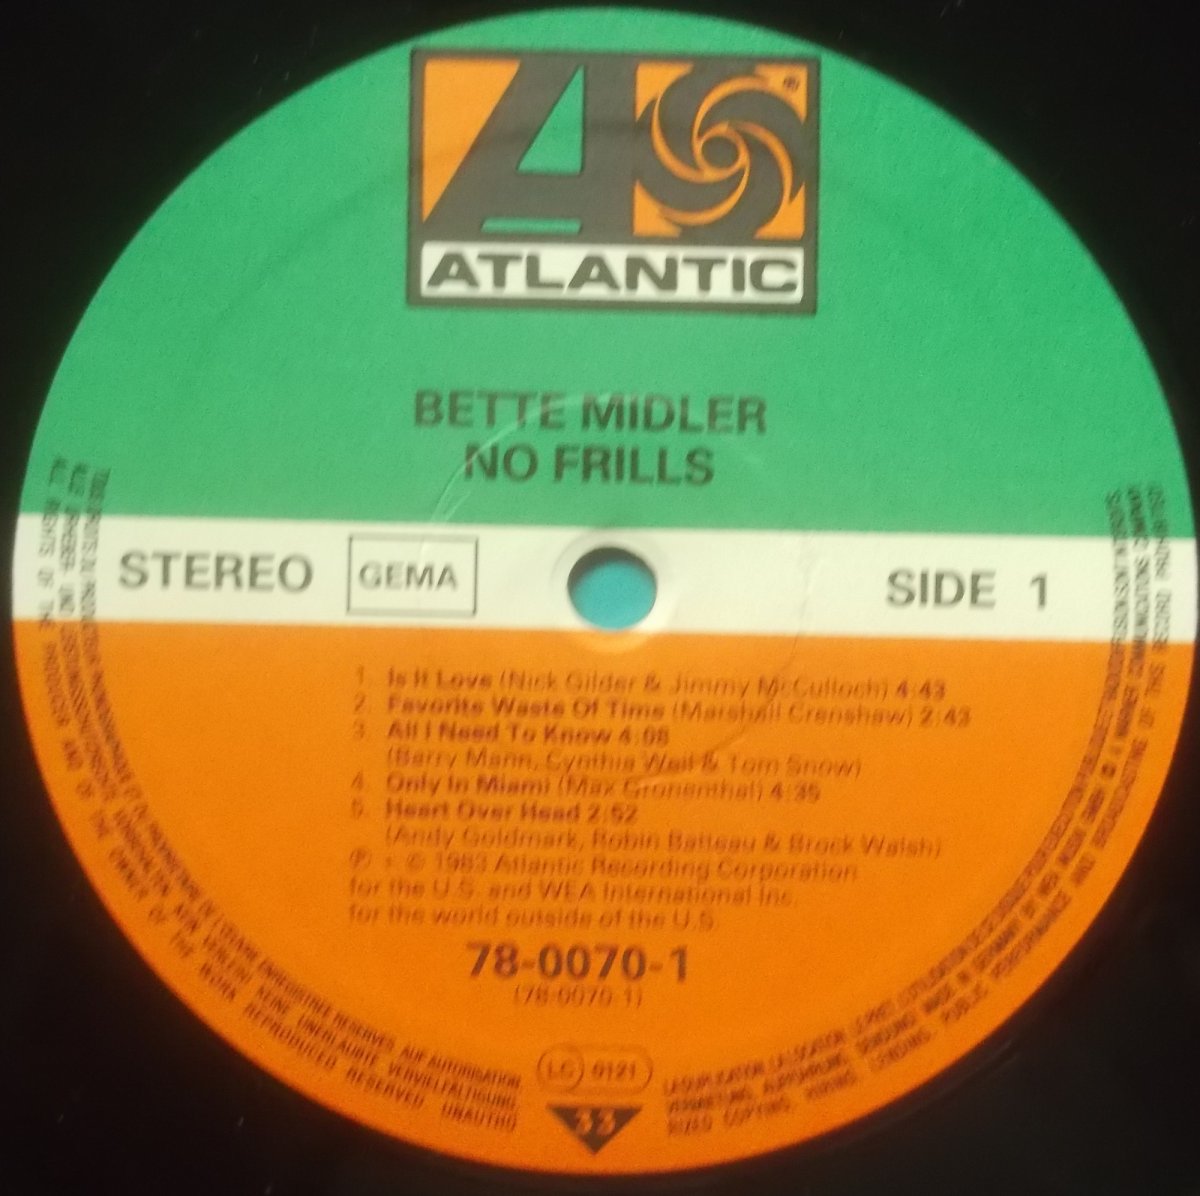 Bette Midler – No Frills